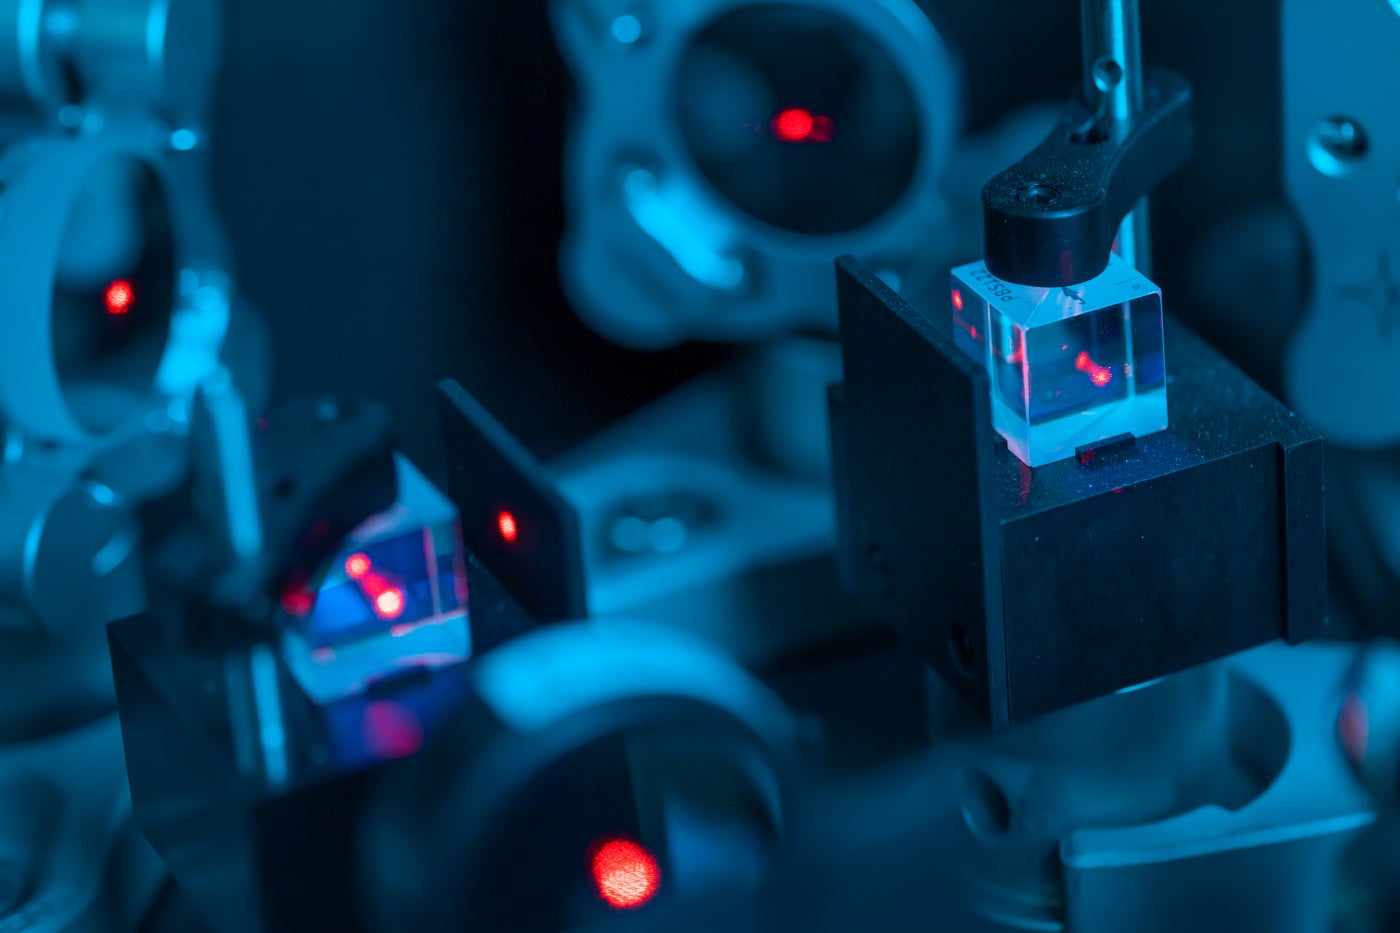 Los investigadores conectaron una computadora cliente que podía detectar fotones, o partículas de luz, a un servidor de computación cuántica con un cable de fibra óptica.